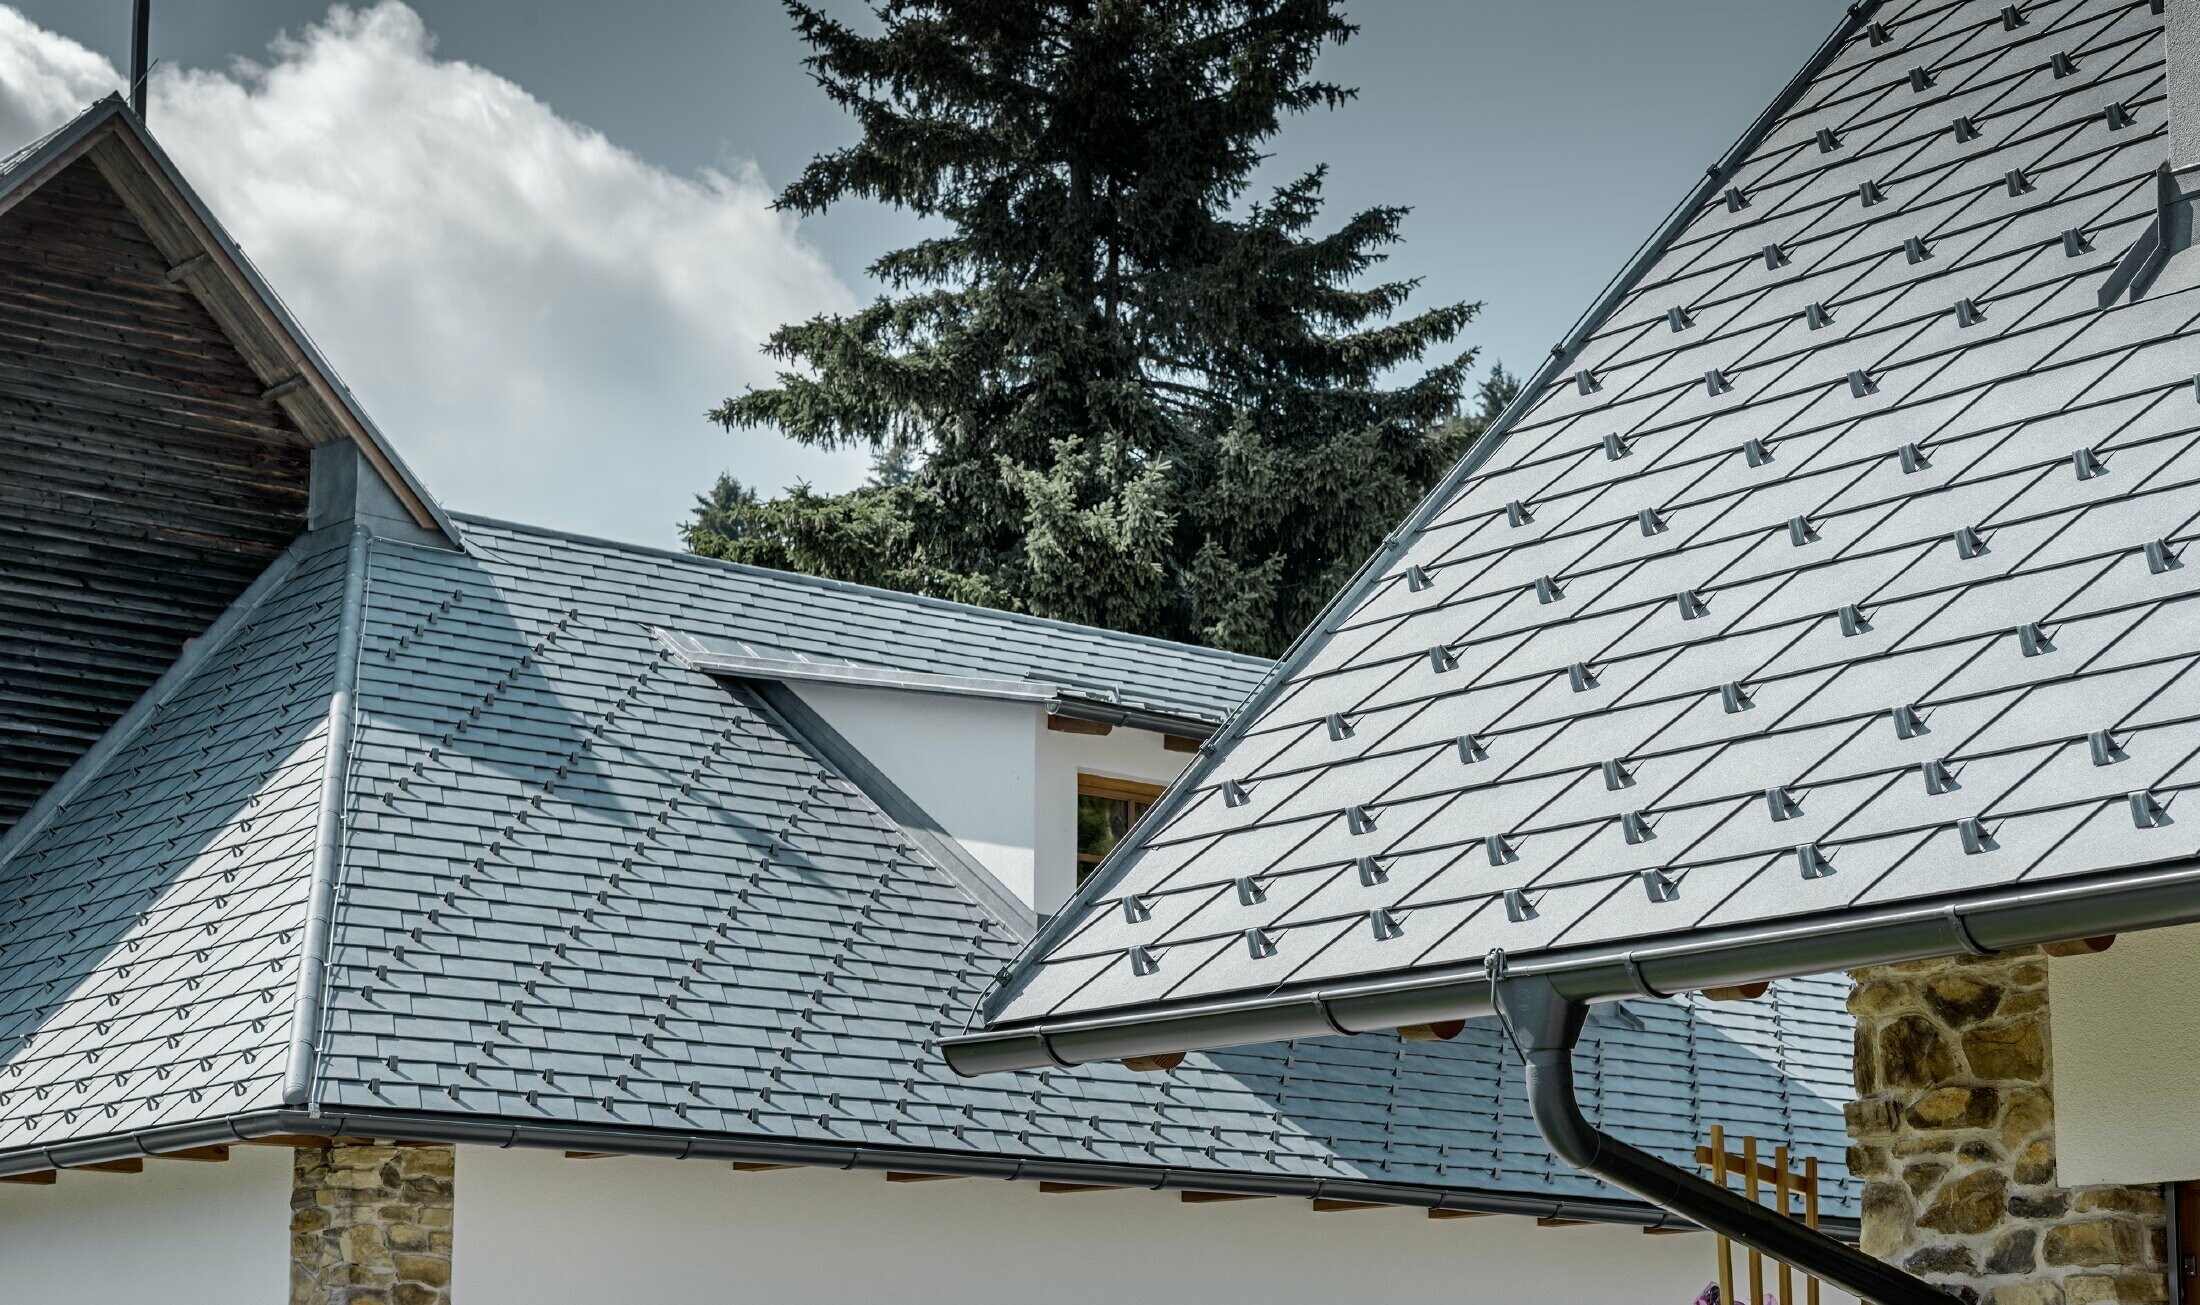 Detal aluminiowego krycia dachu PREFA, dachówka łupkowa w kolorze szarym kamiennym z aluminiową rynną dachową PREFA w kolorze antracytowym; w tle jest widoczna lukarna ciągniona z dachem na rąbek stojący. Elewacja jest biała z osadzonymi elementami kamiennymi.